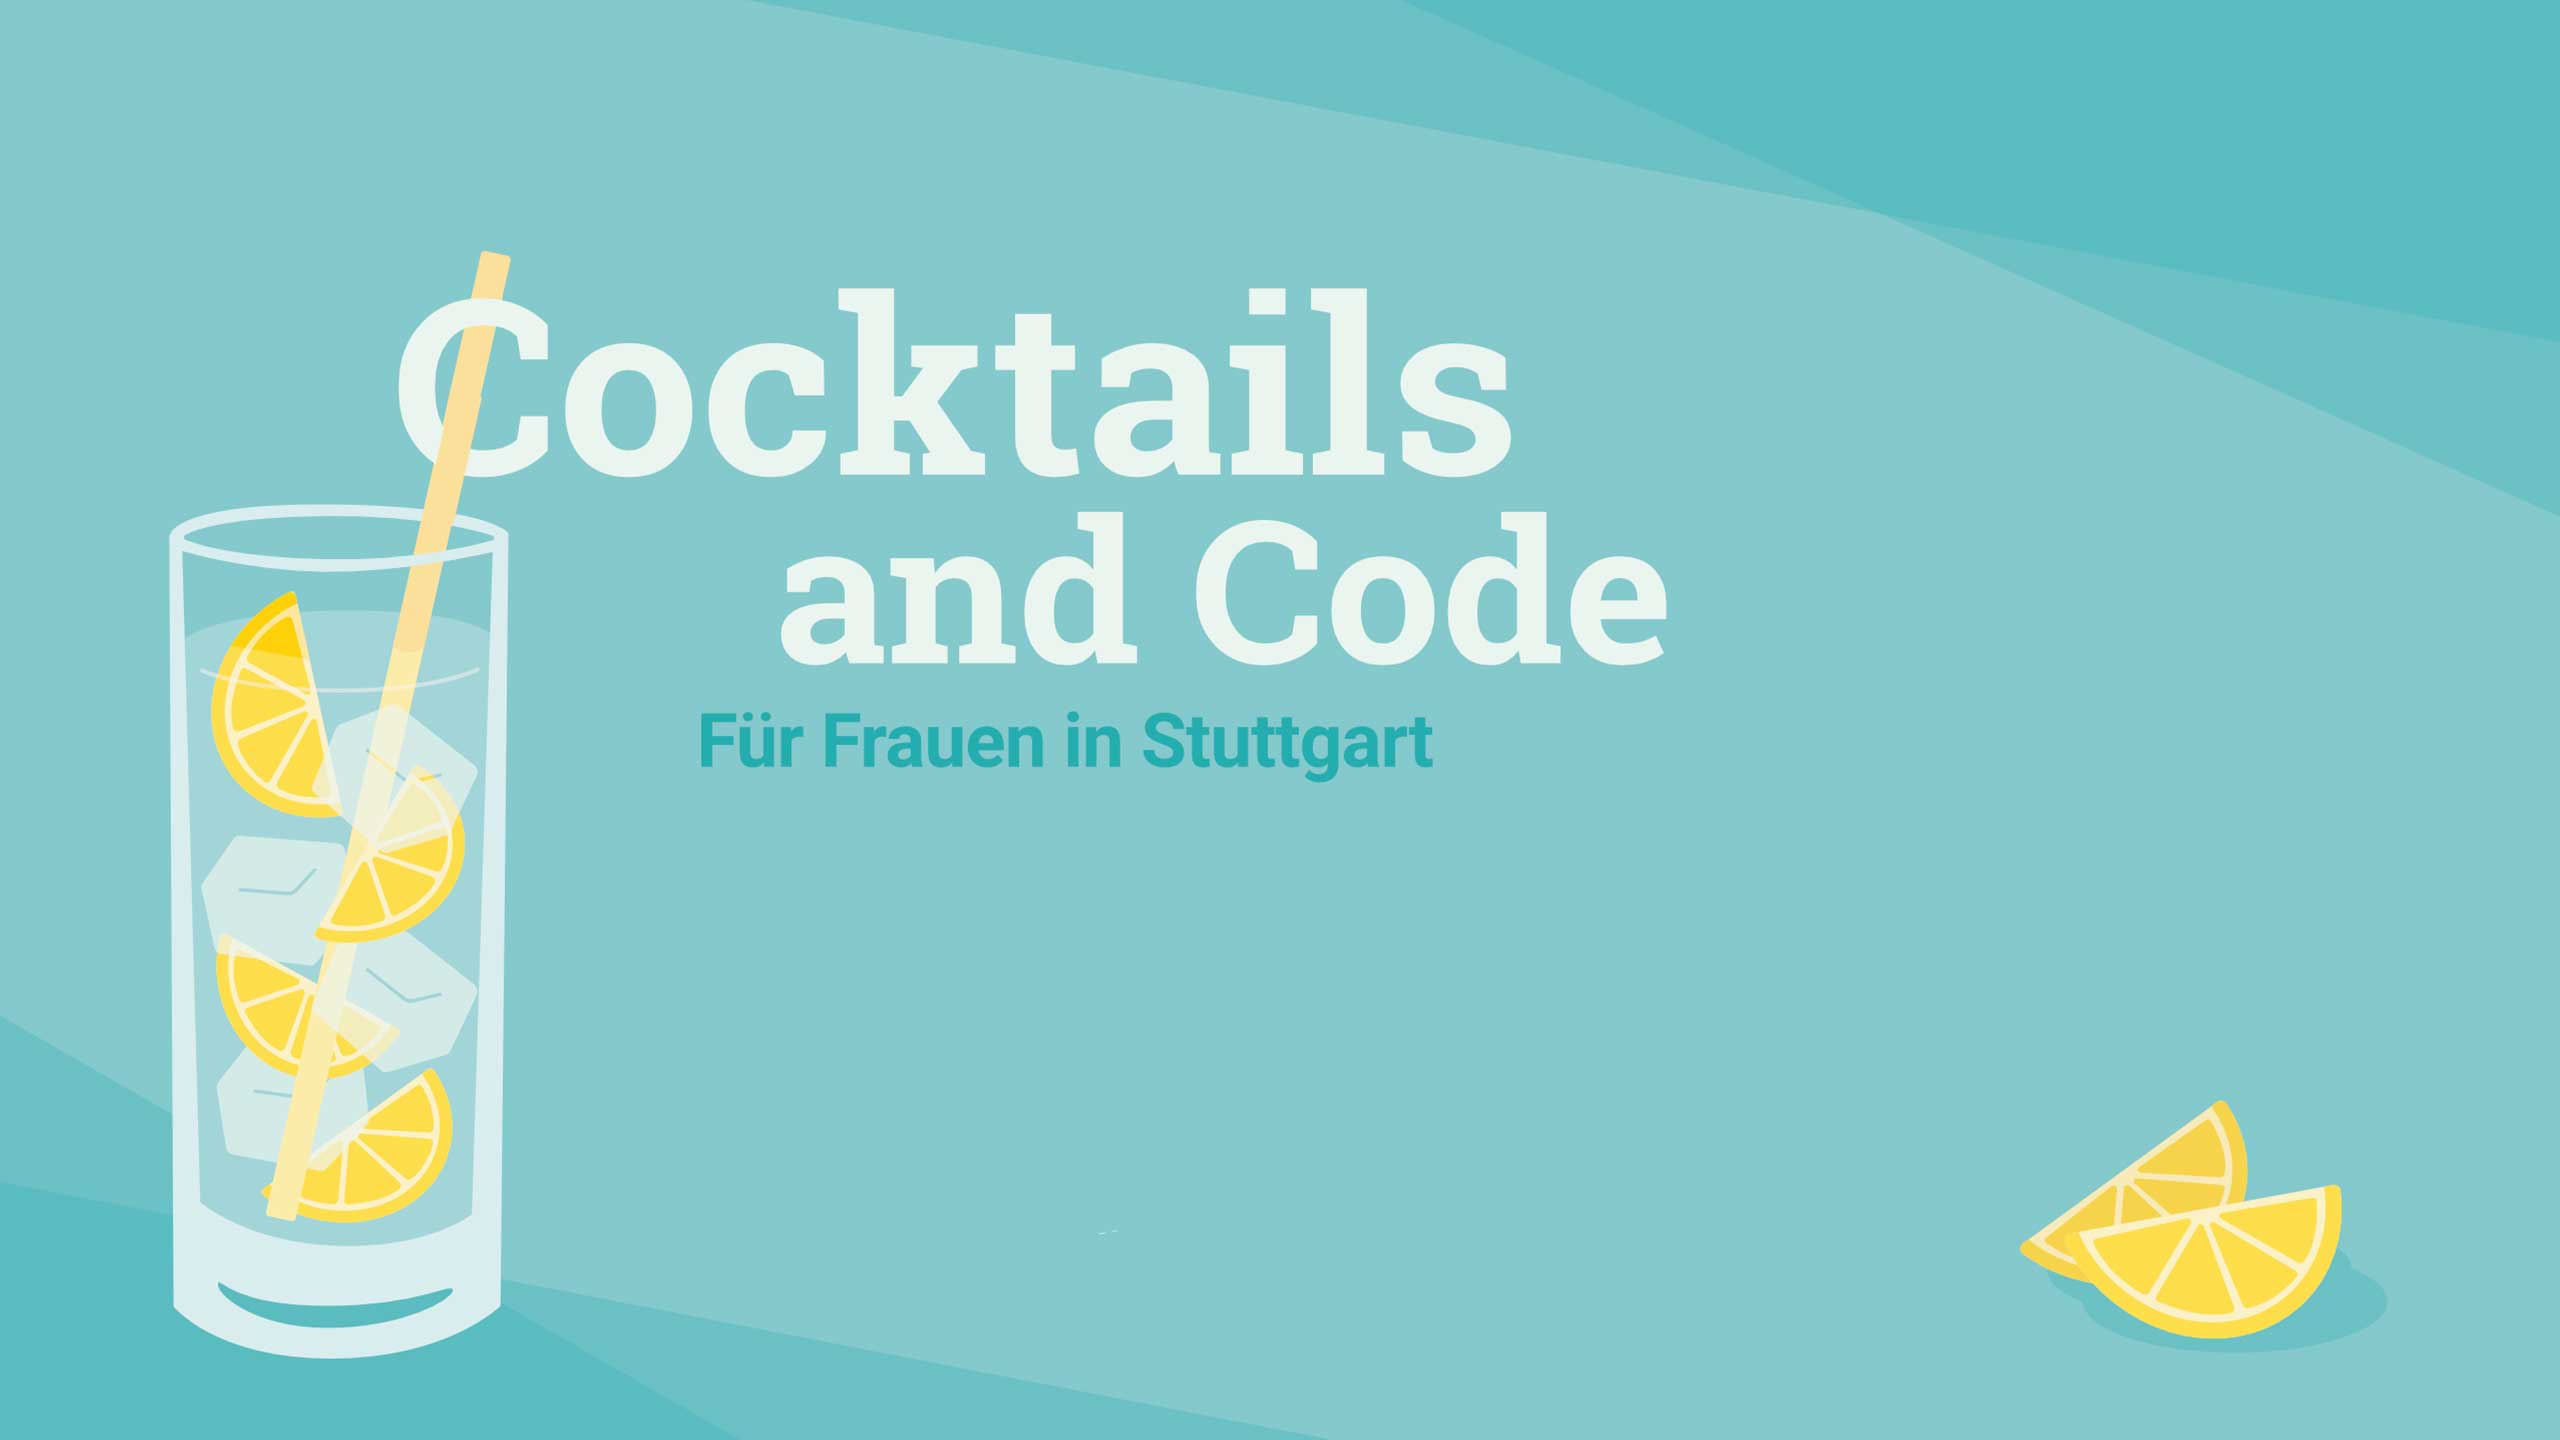 Cocktails & Code 2020 - Cocktails & Code für Frauen in der IT in Stuttgart / copy Ready to Code e.V.